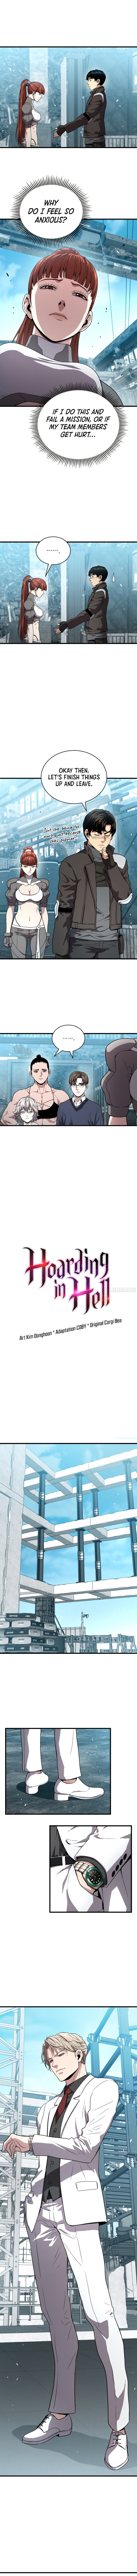 hoarding-in-hell-chap-53-5